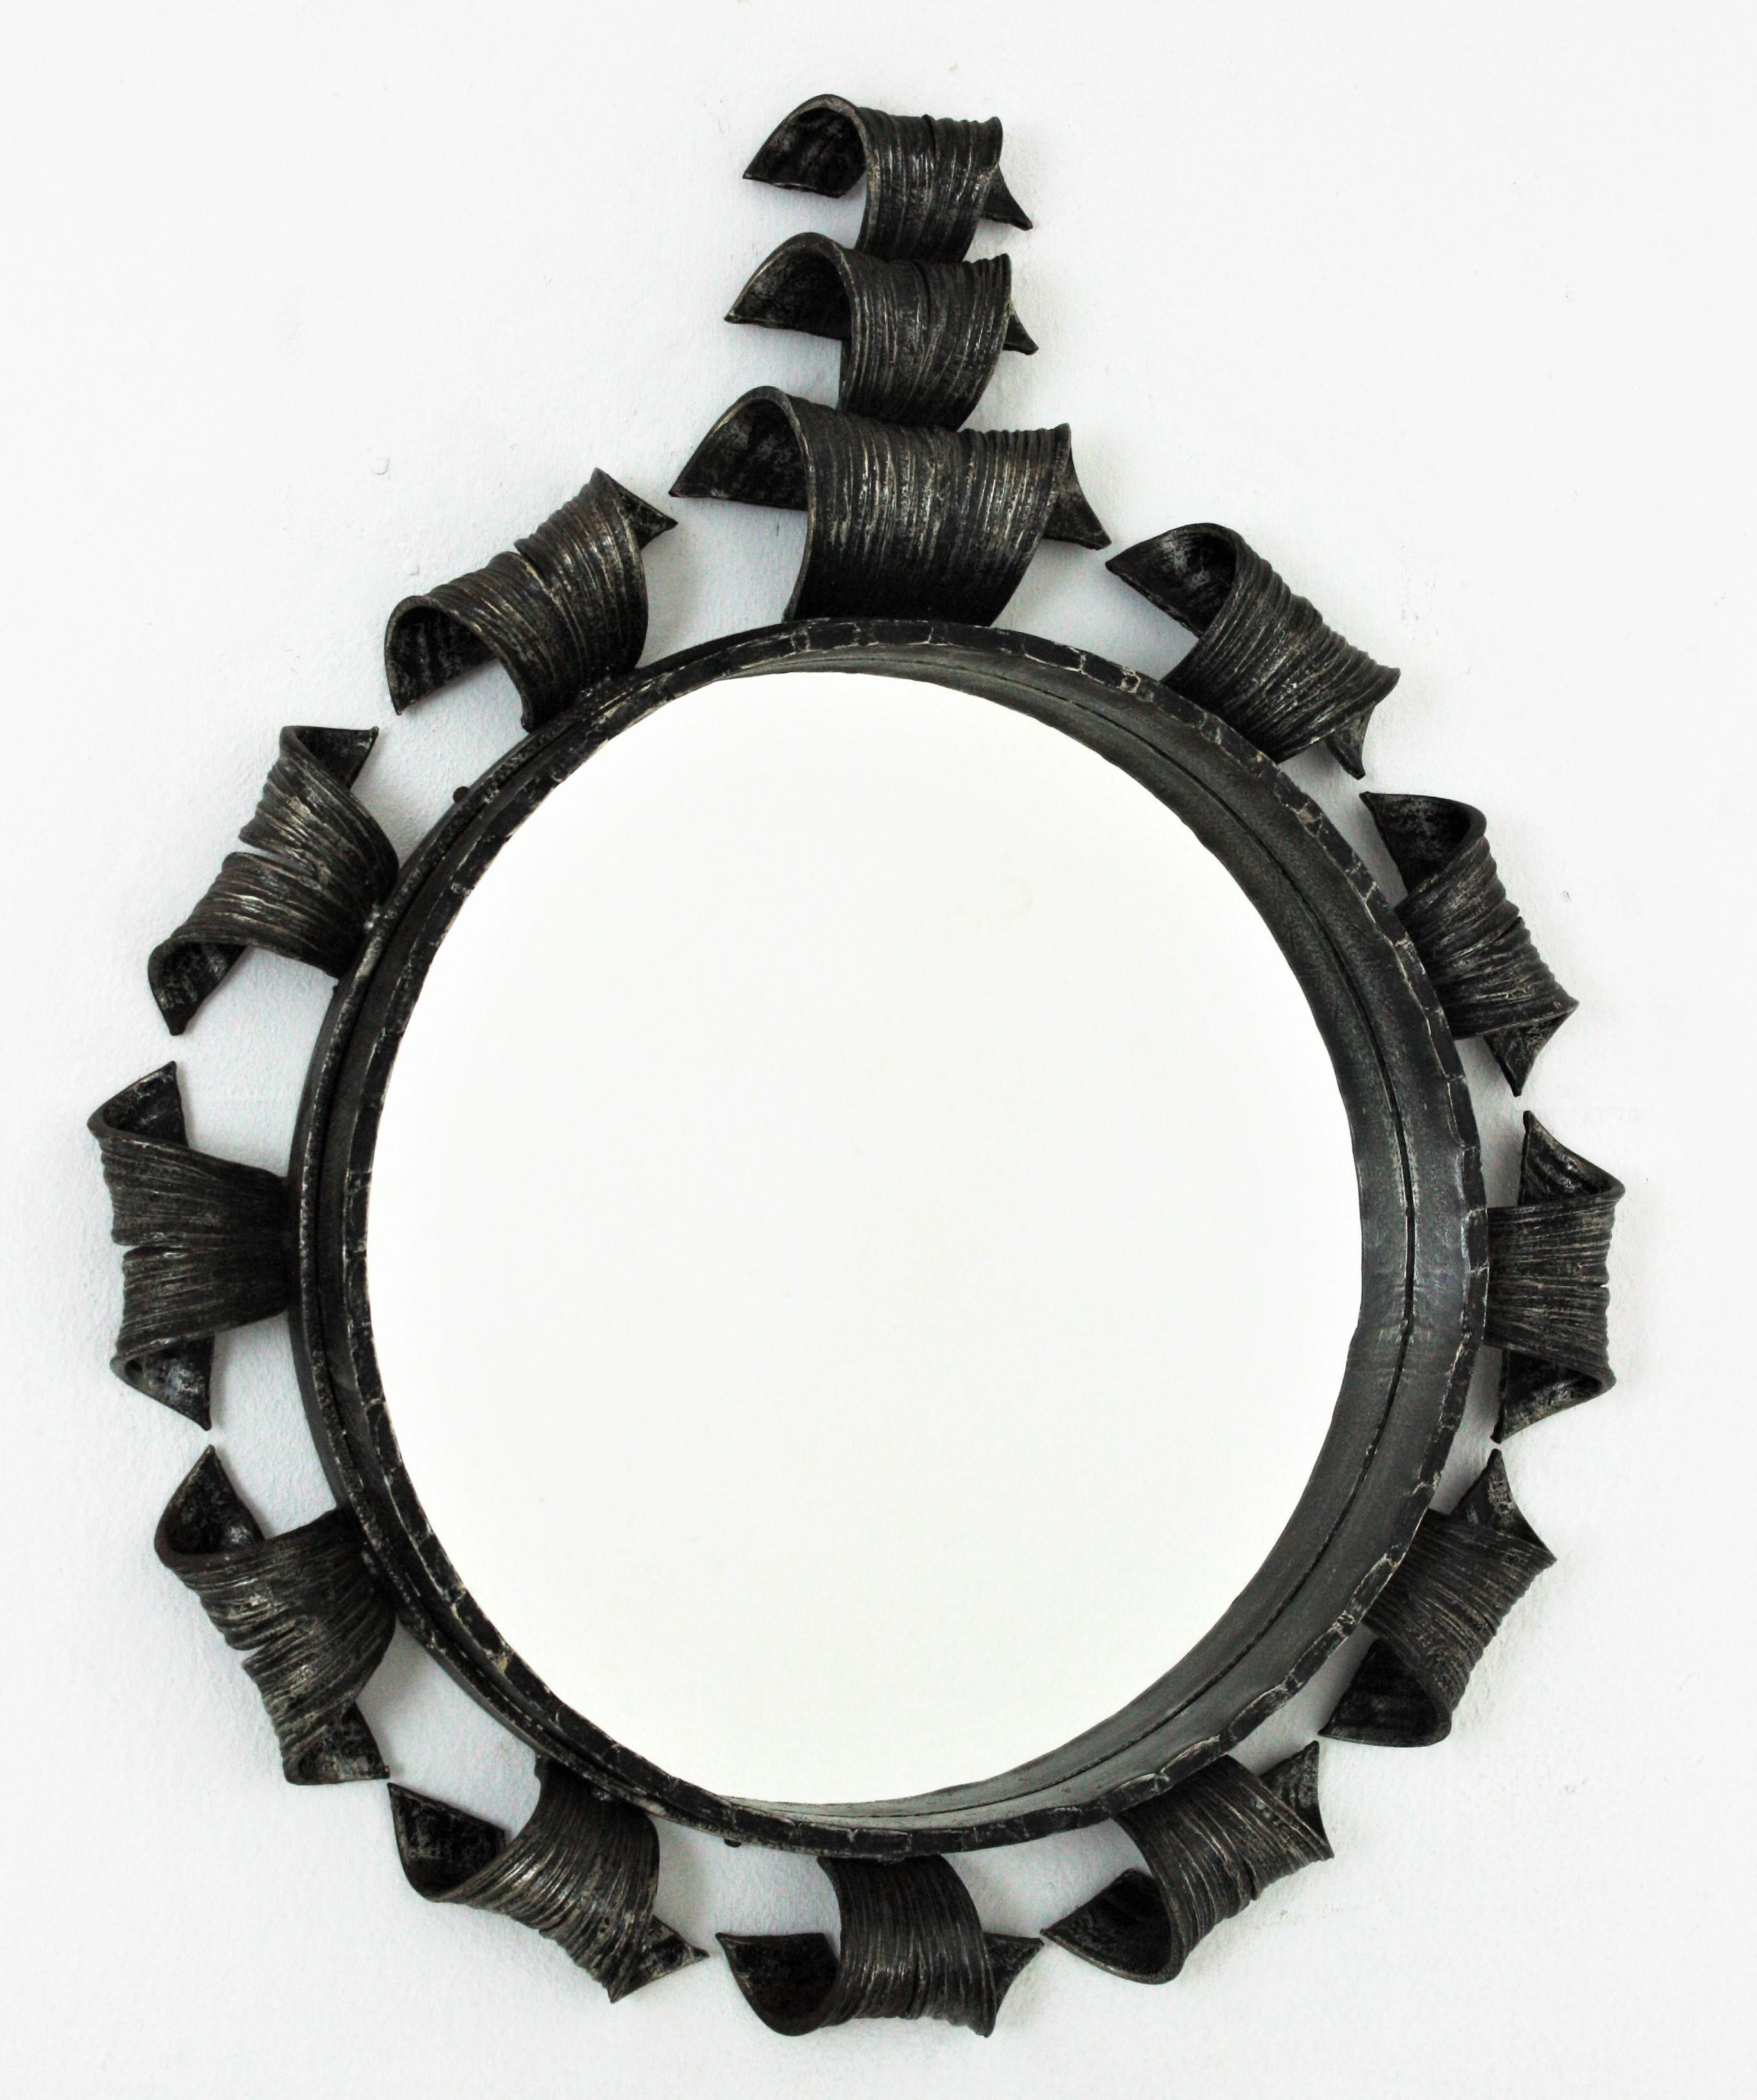 Runder Spiegel aus handgeschmiedetem Eisen mit verschnörkelten Details und Wappen, Spanien, 1960er Jahre.
Dieser auffällige Spiegel ist vollständig von Hand gefertigt. Brutalistisches Design und eine sehr schwere Konstruktion. Der Rahmen hat dicke,